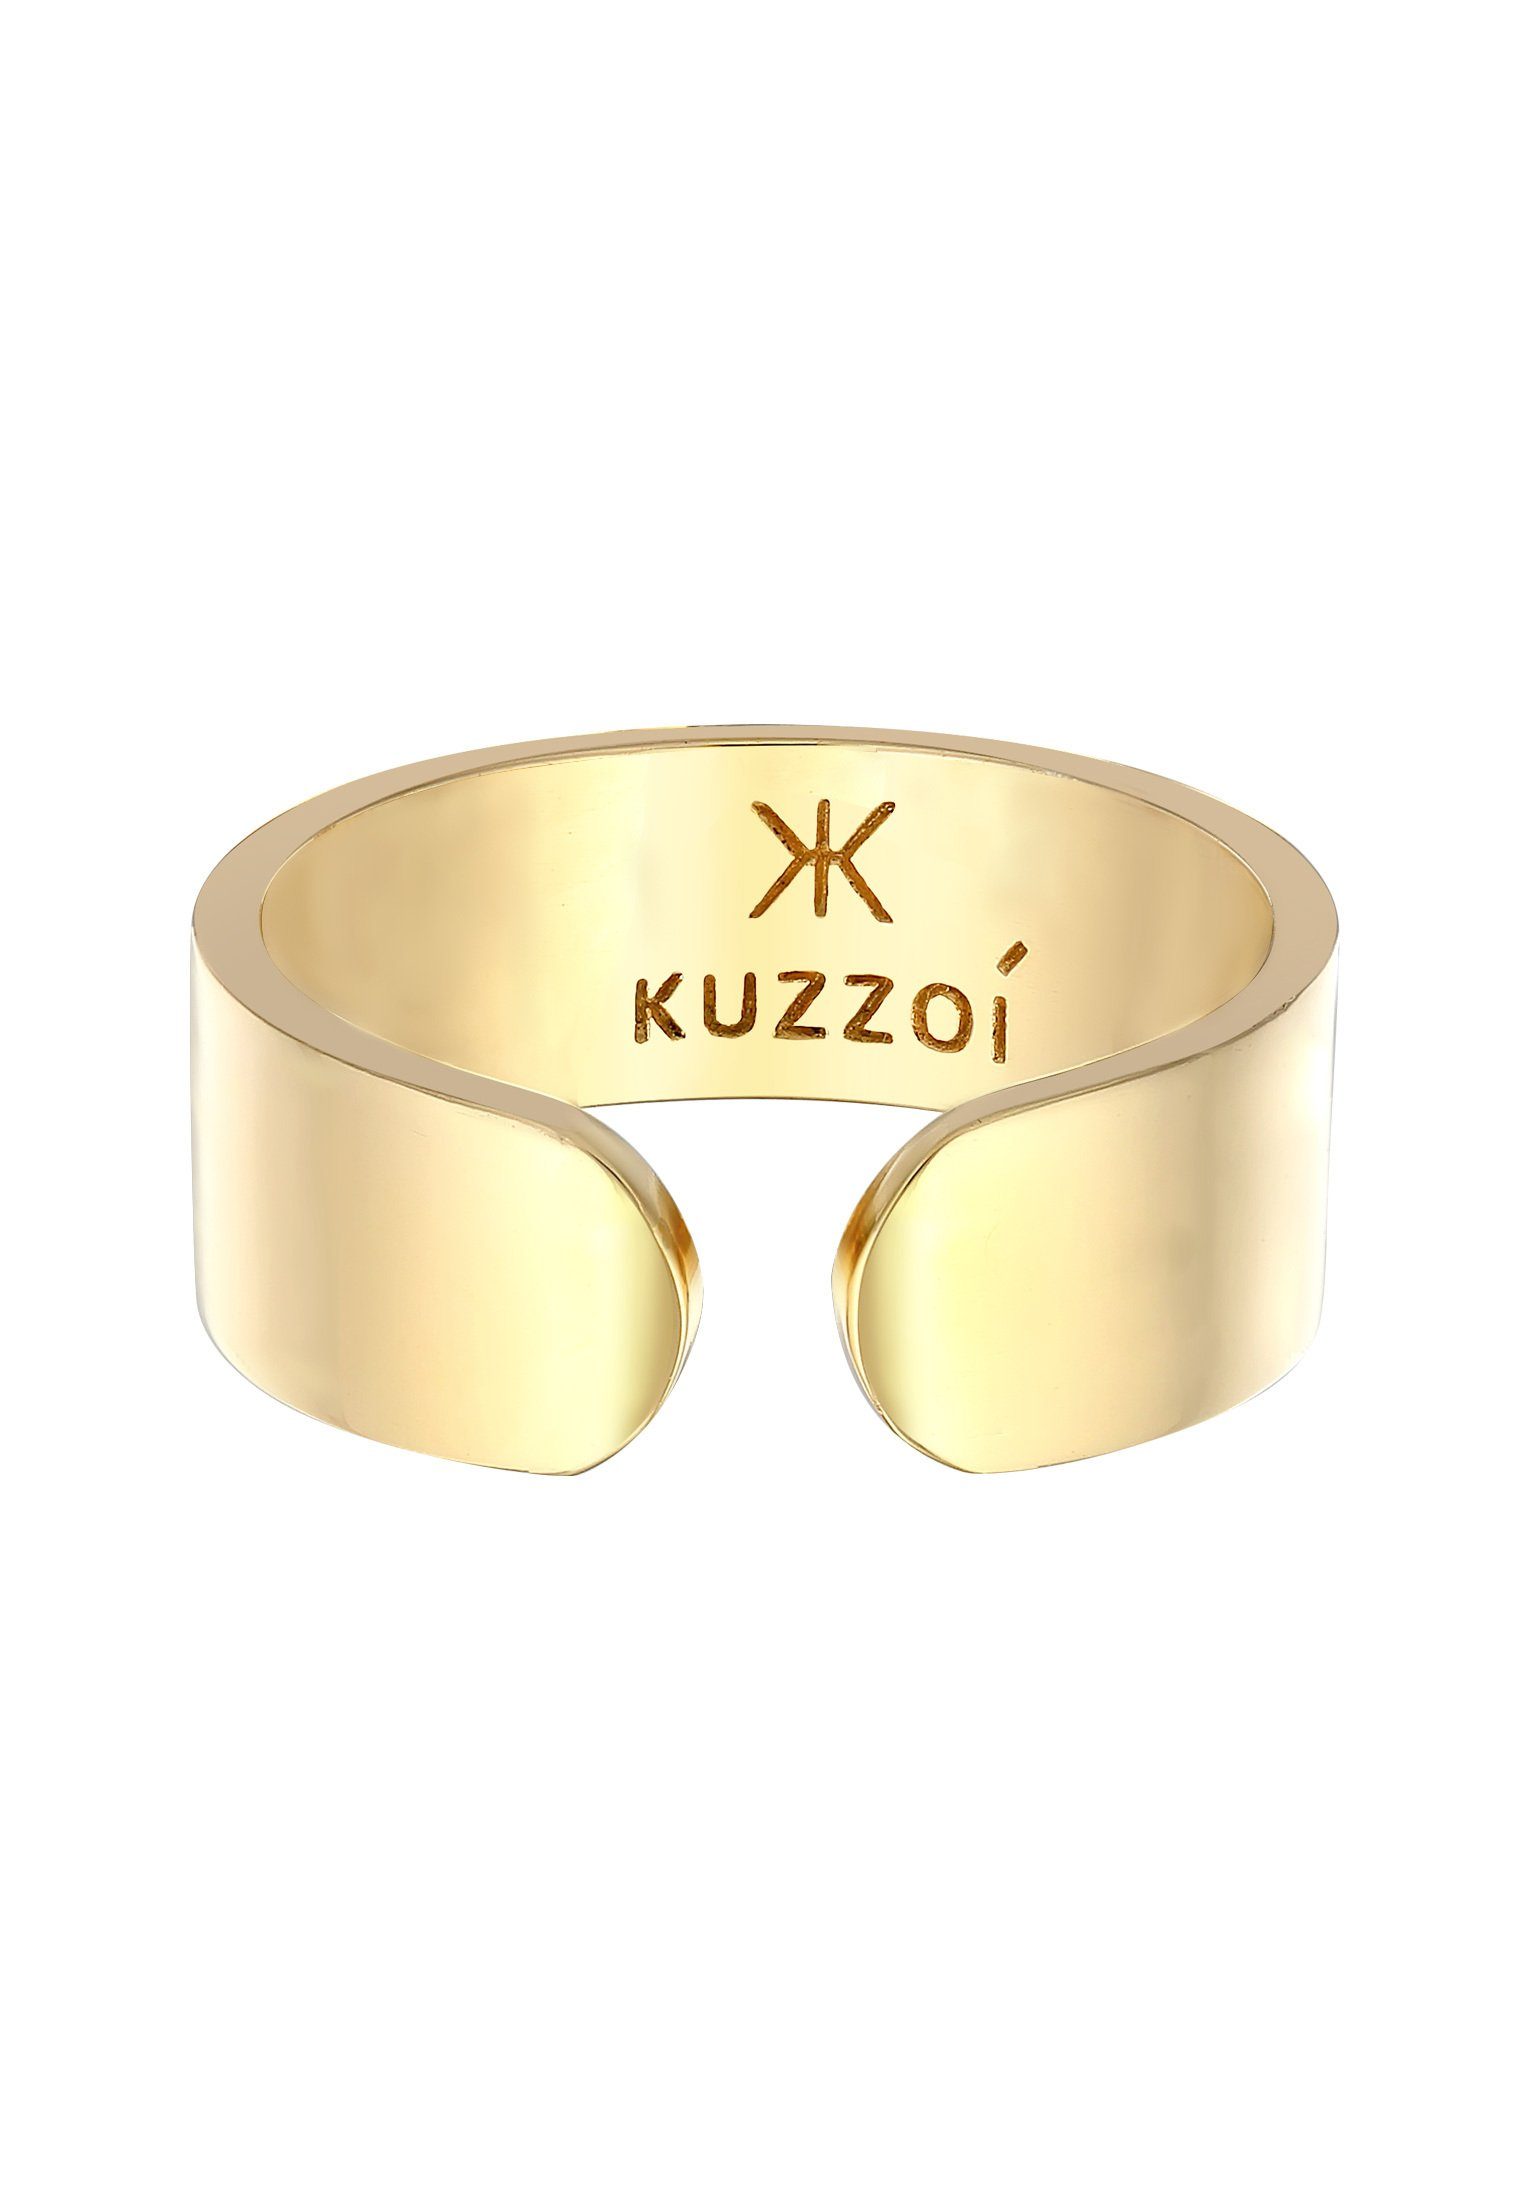 Kuzzoi Silberring Bandring Klares Design Offen Gold Silber 925